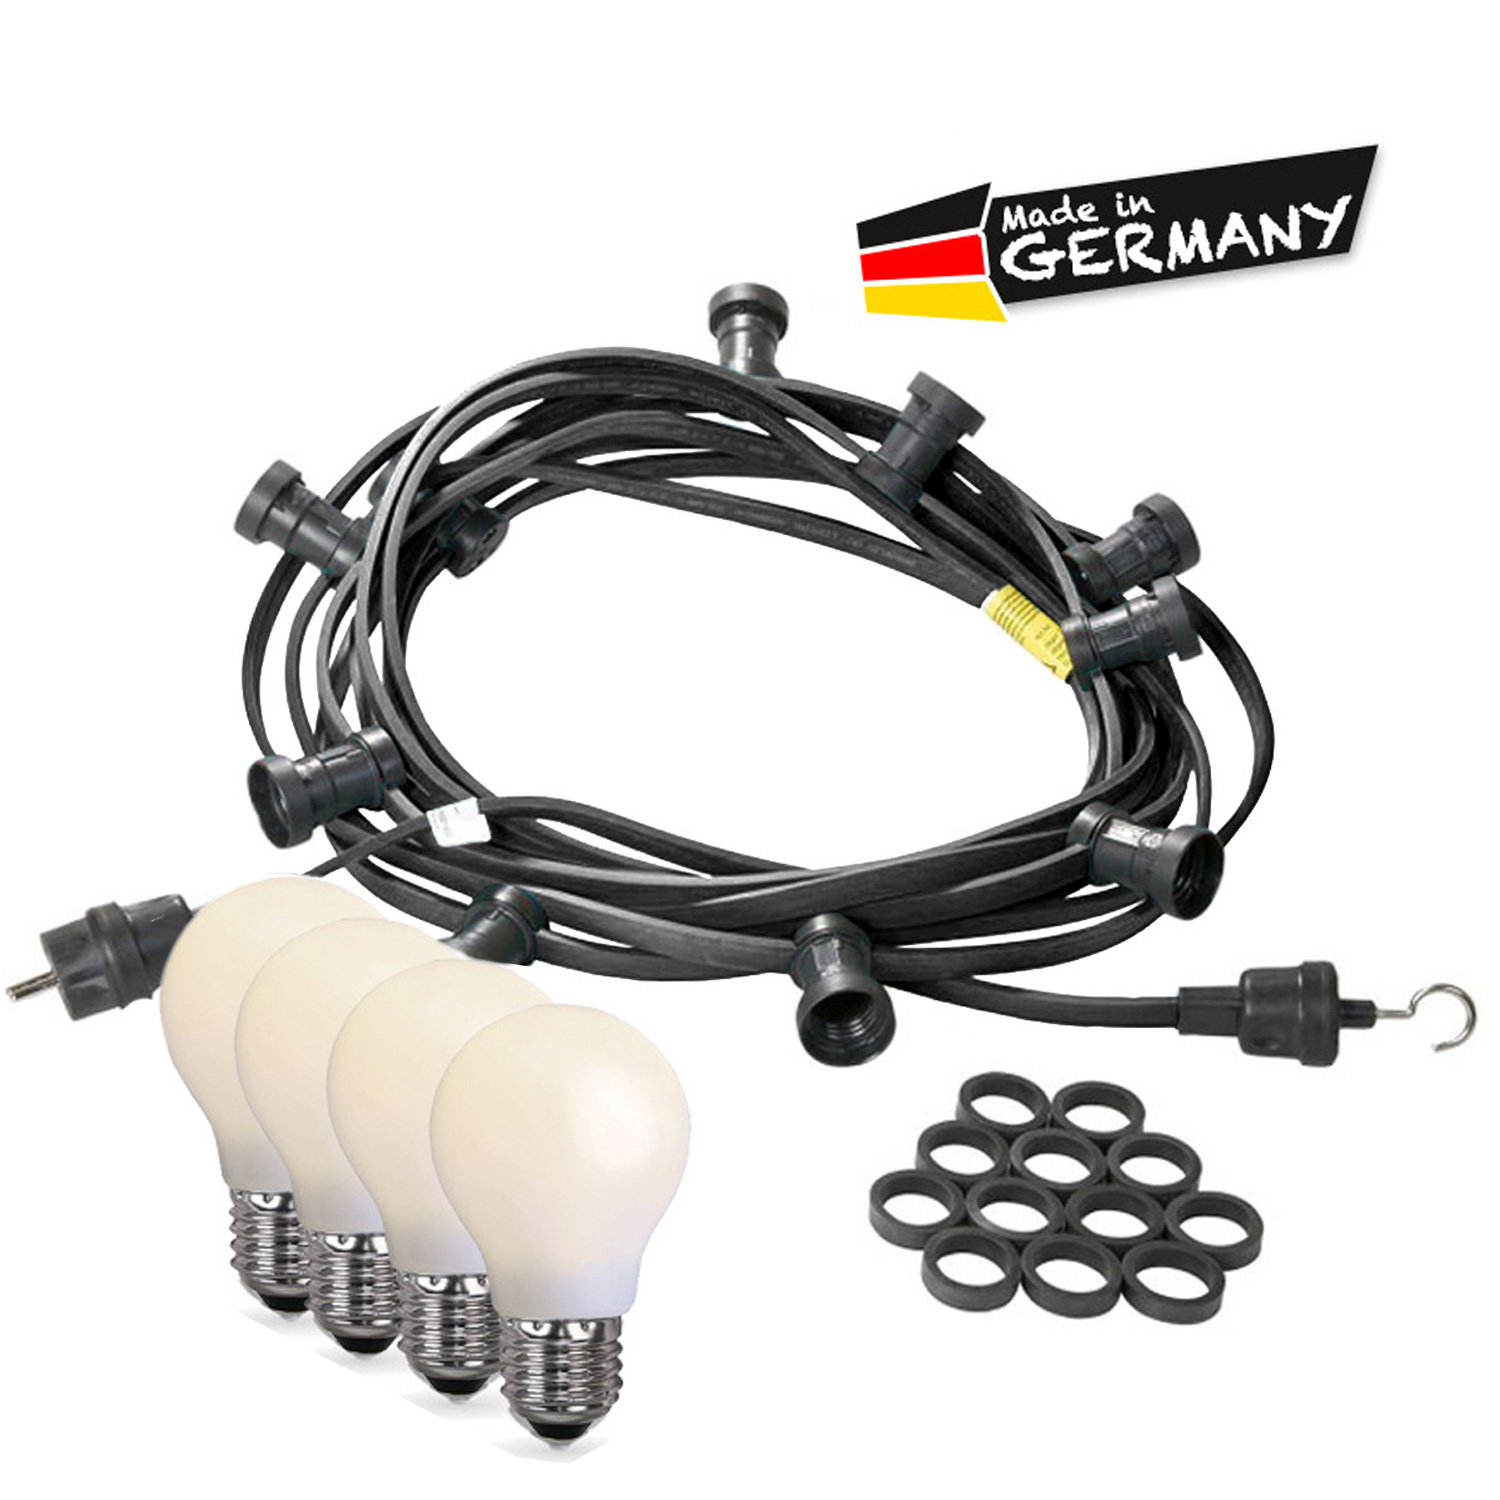 Illu-/Partylichterkette 40m - Außen - Made in Germany - 60 bruchfeste opale LED Tropfenlampen